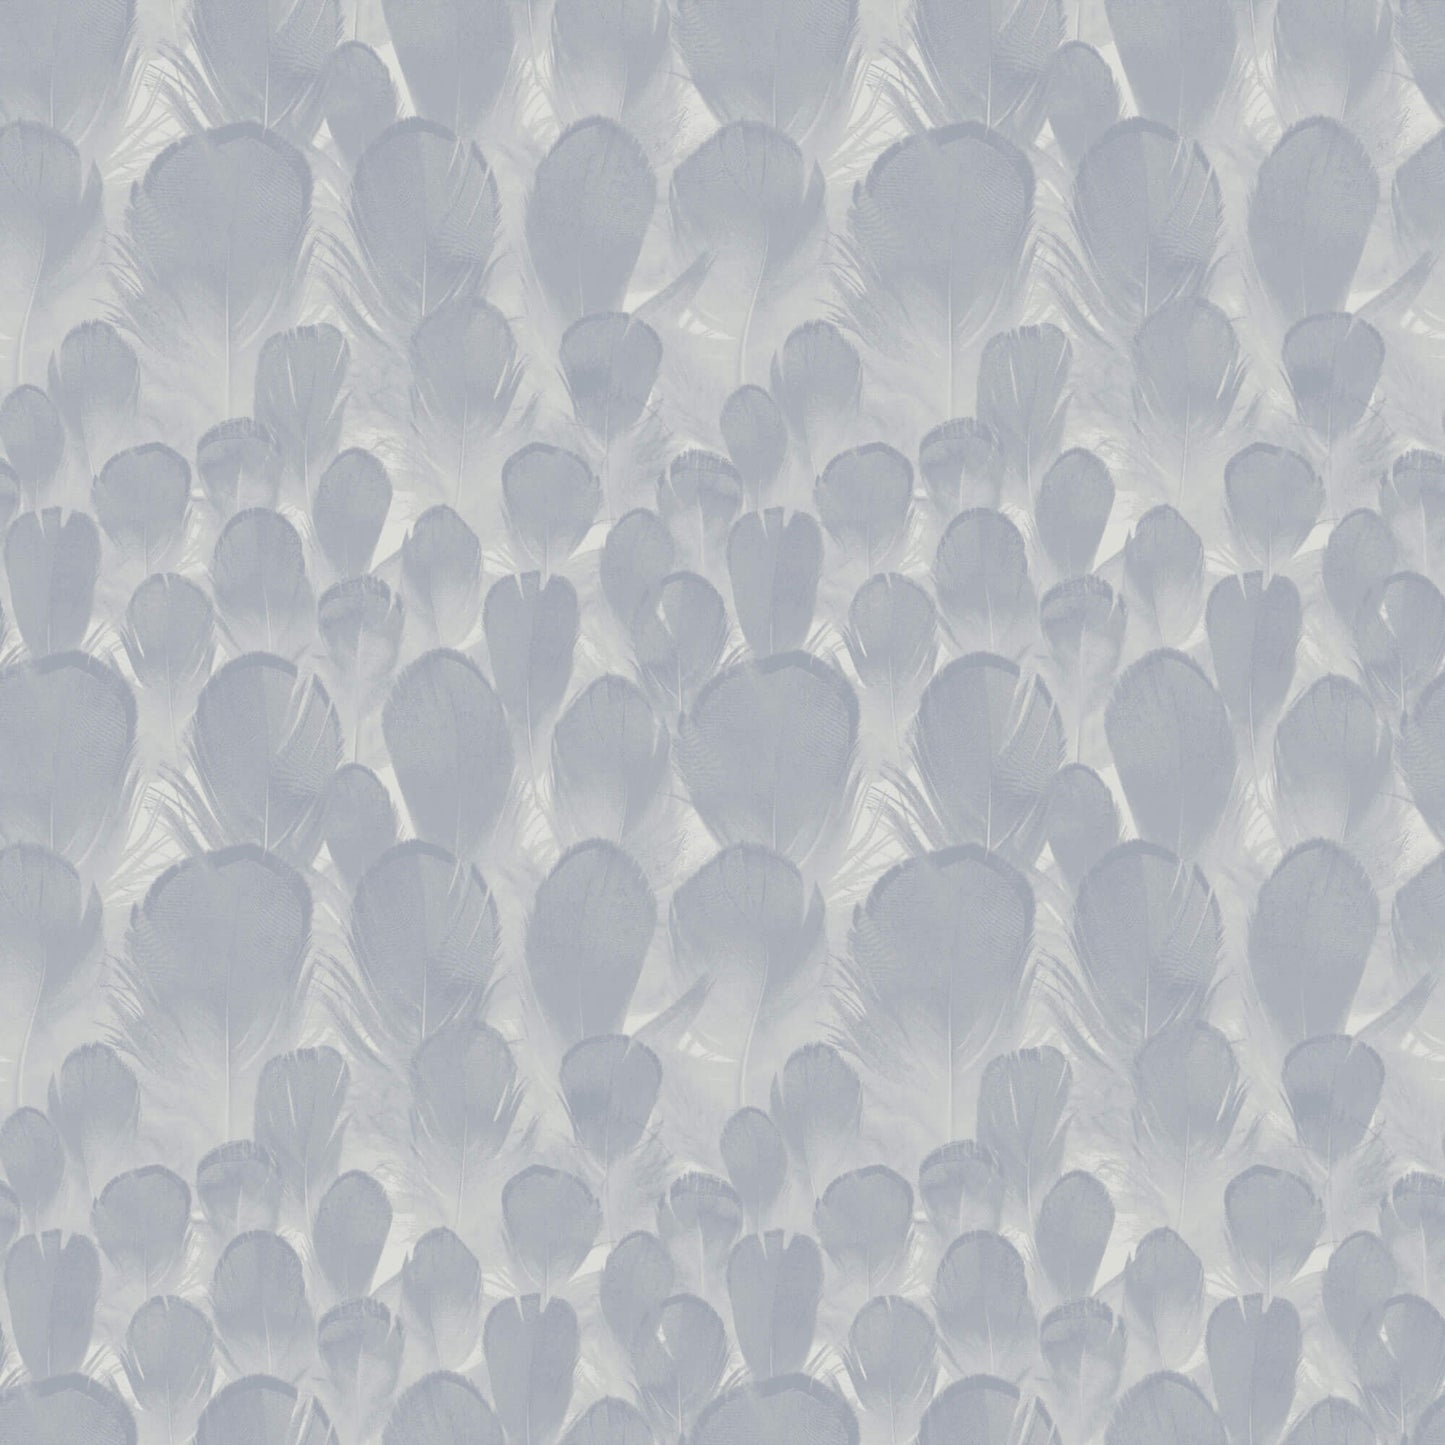 Y6230103 Feathers Wallpaper by Antonina Vella Lavender